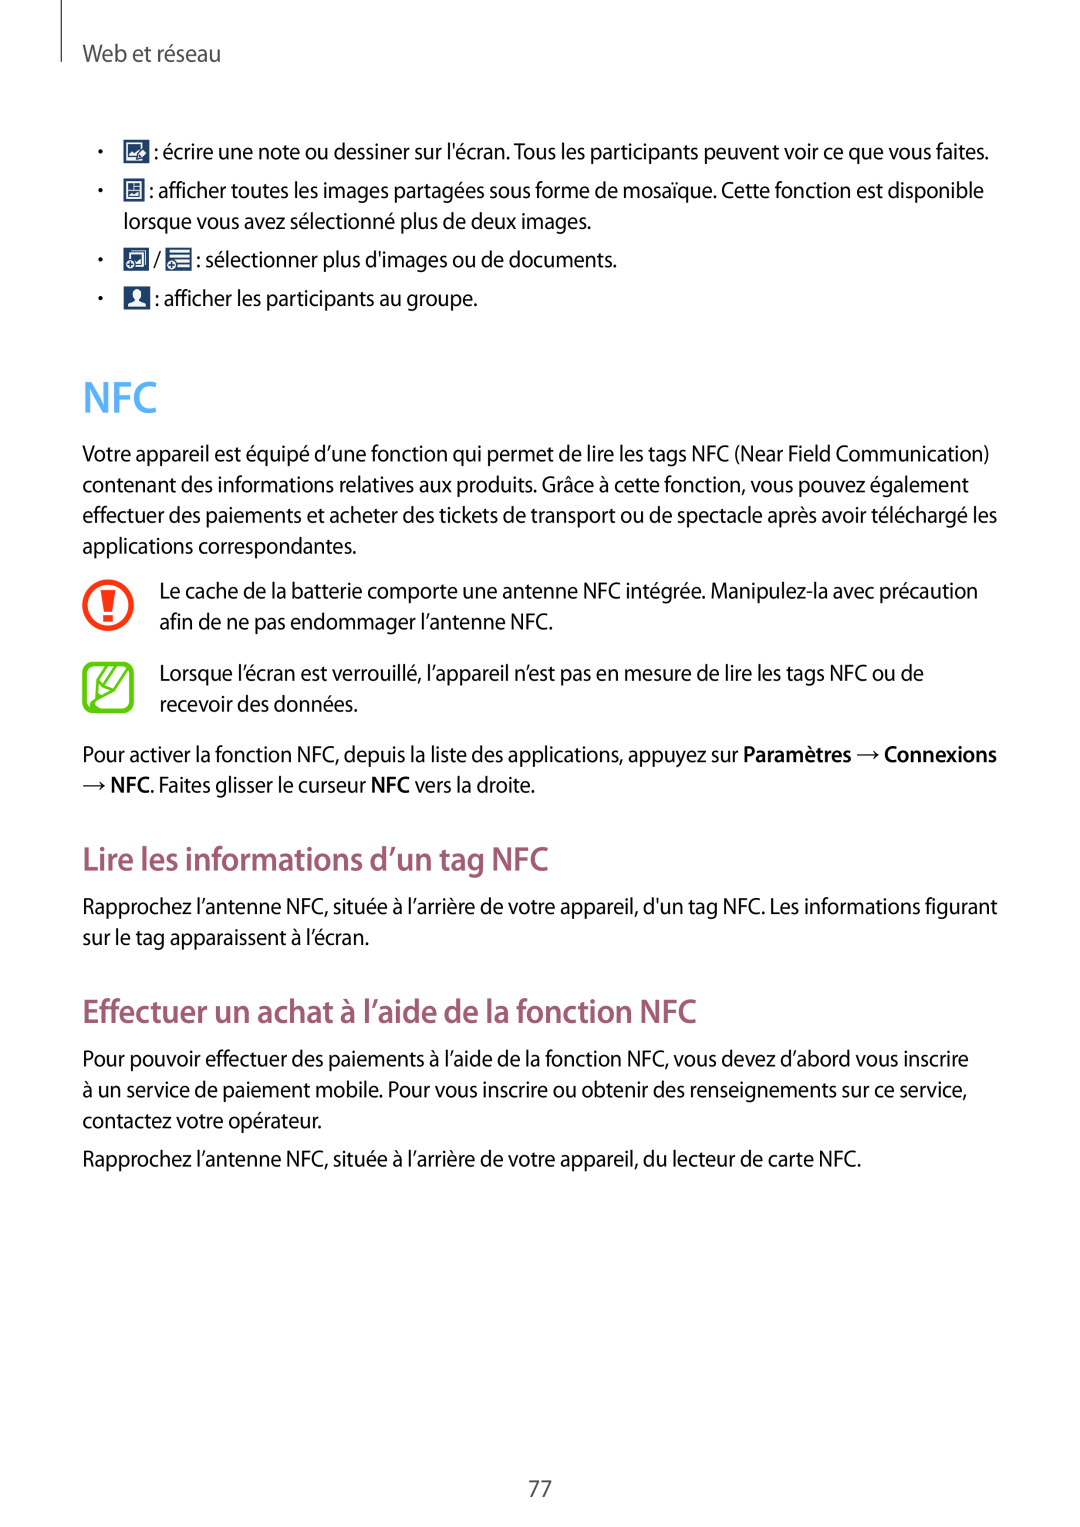 Samsung GT-N7105RWDSFR Lire les informations d’un tag NFC, Effectuer un achat à l’aide de la fonction NFC, Web et réseau 